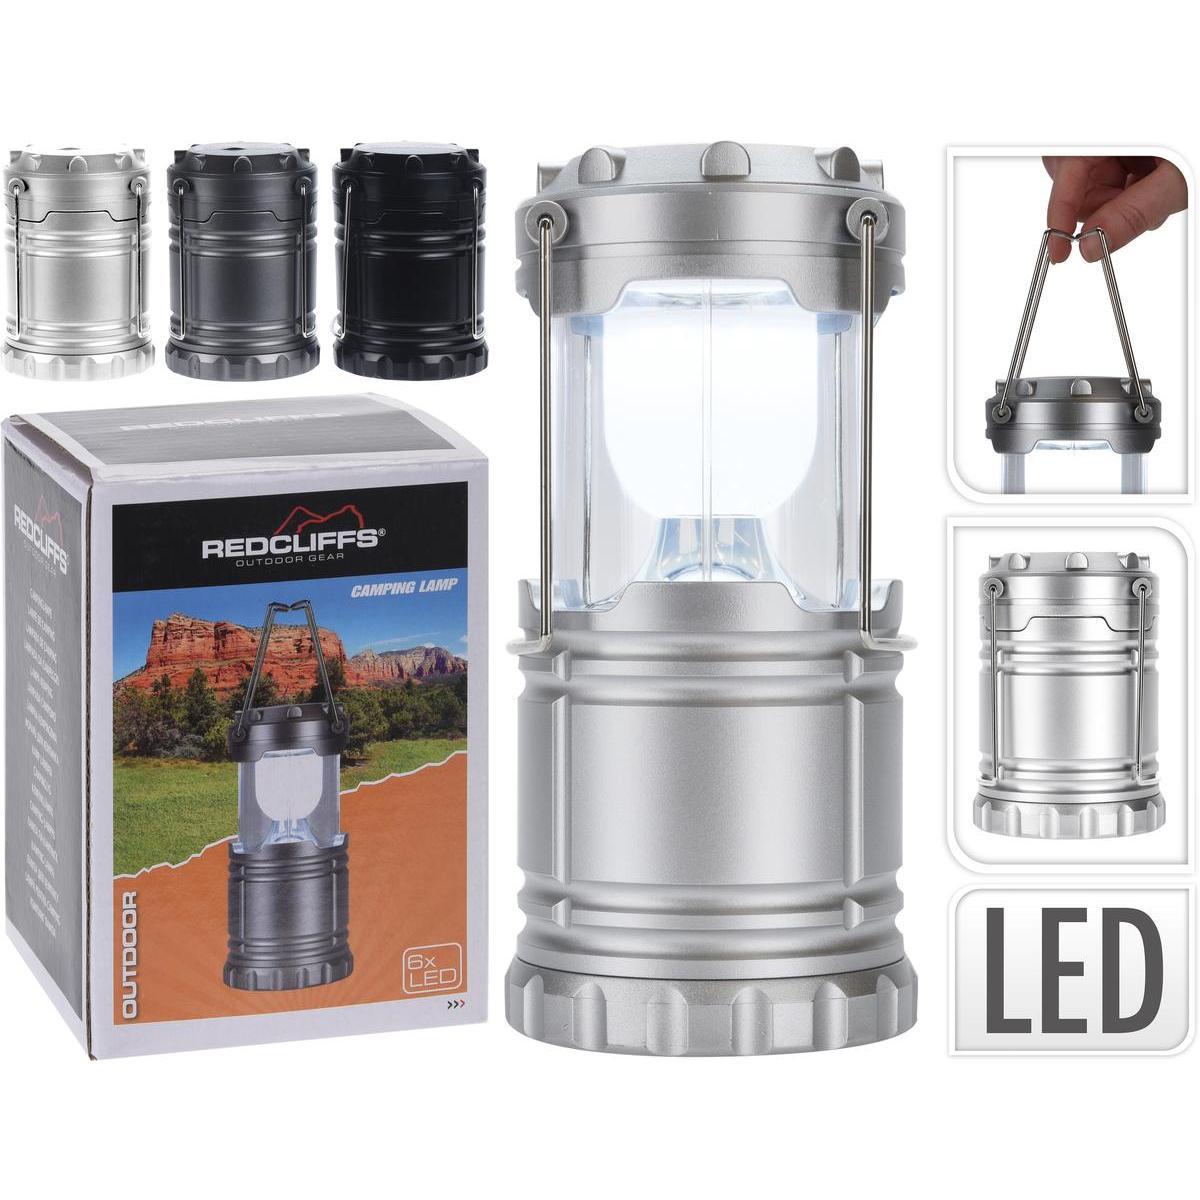 Lanterne de camping LED - Différents modèles